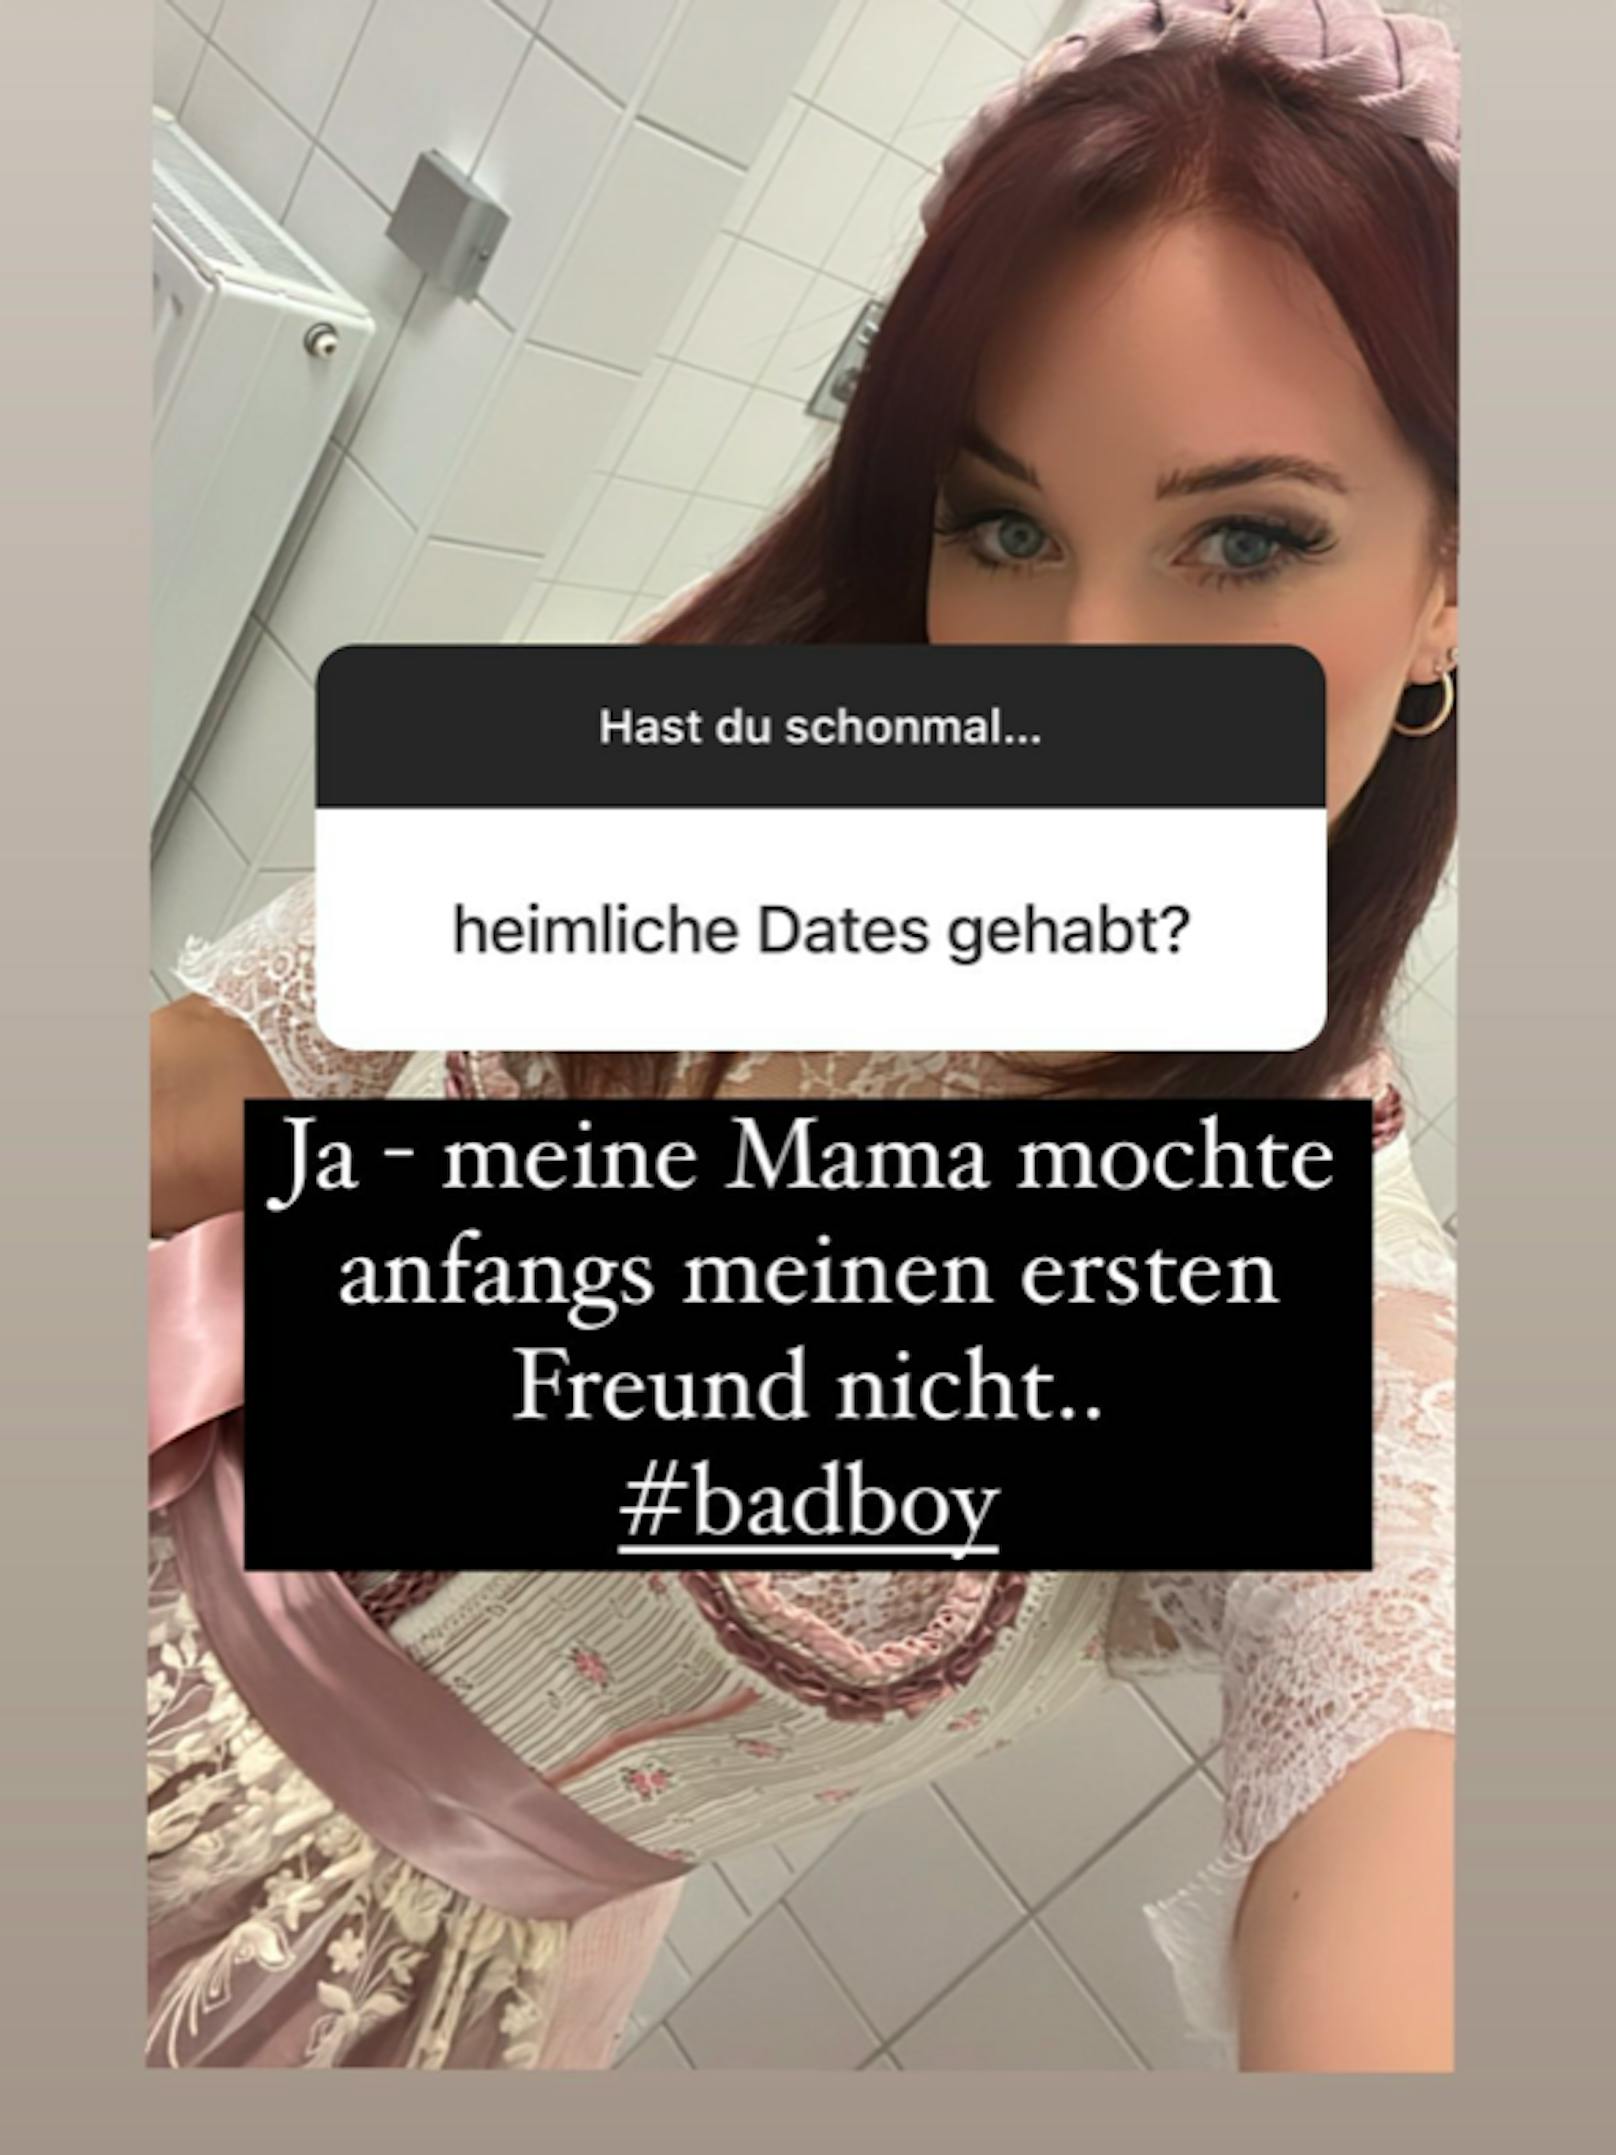 Berenice veranstaltete kürzlich eine Fragerunde auf Instagram. Ihre Fans nutzten die Chance, um der Gabalier-Sängerin pikante Fragen zu stellen.